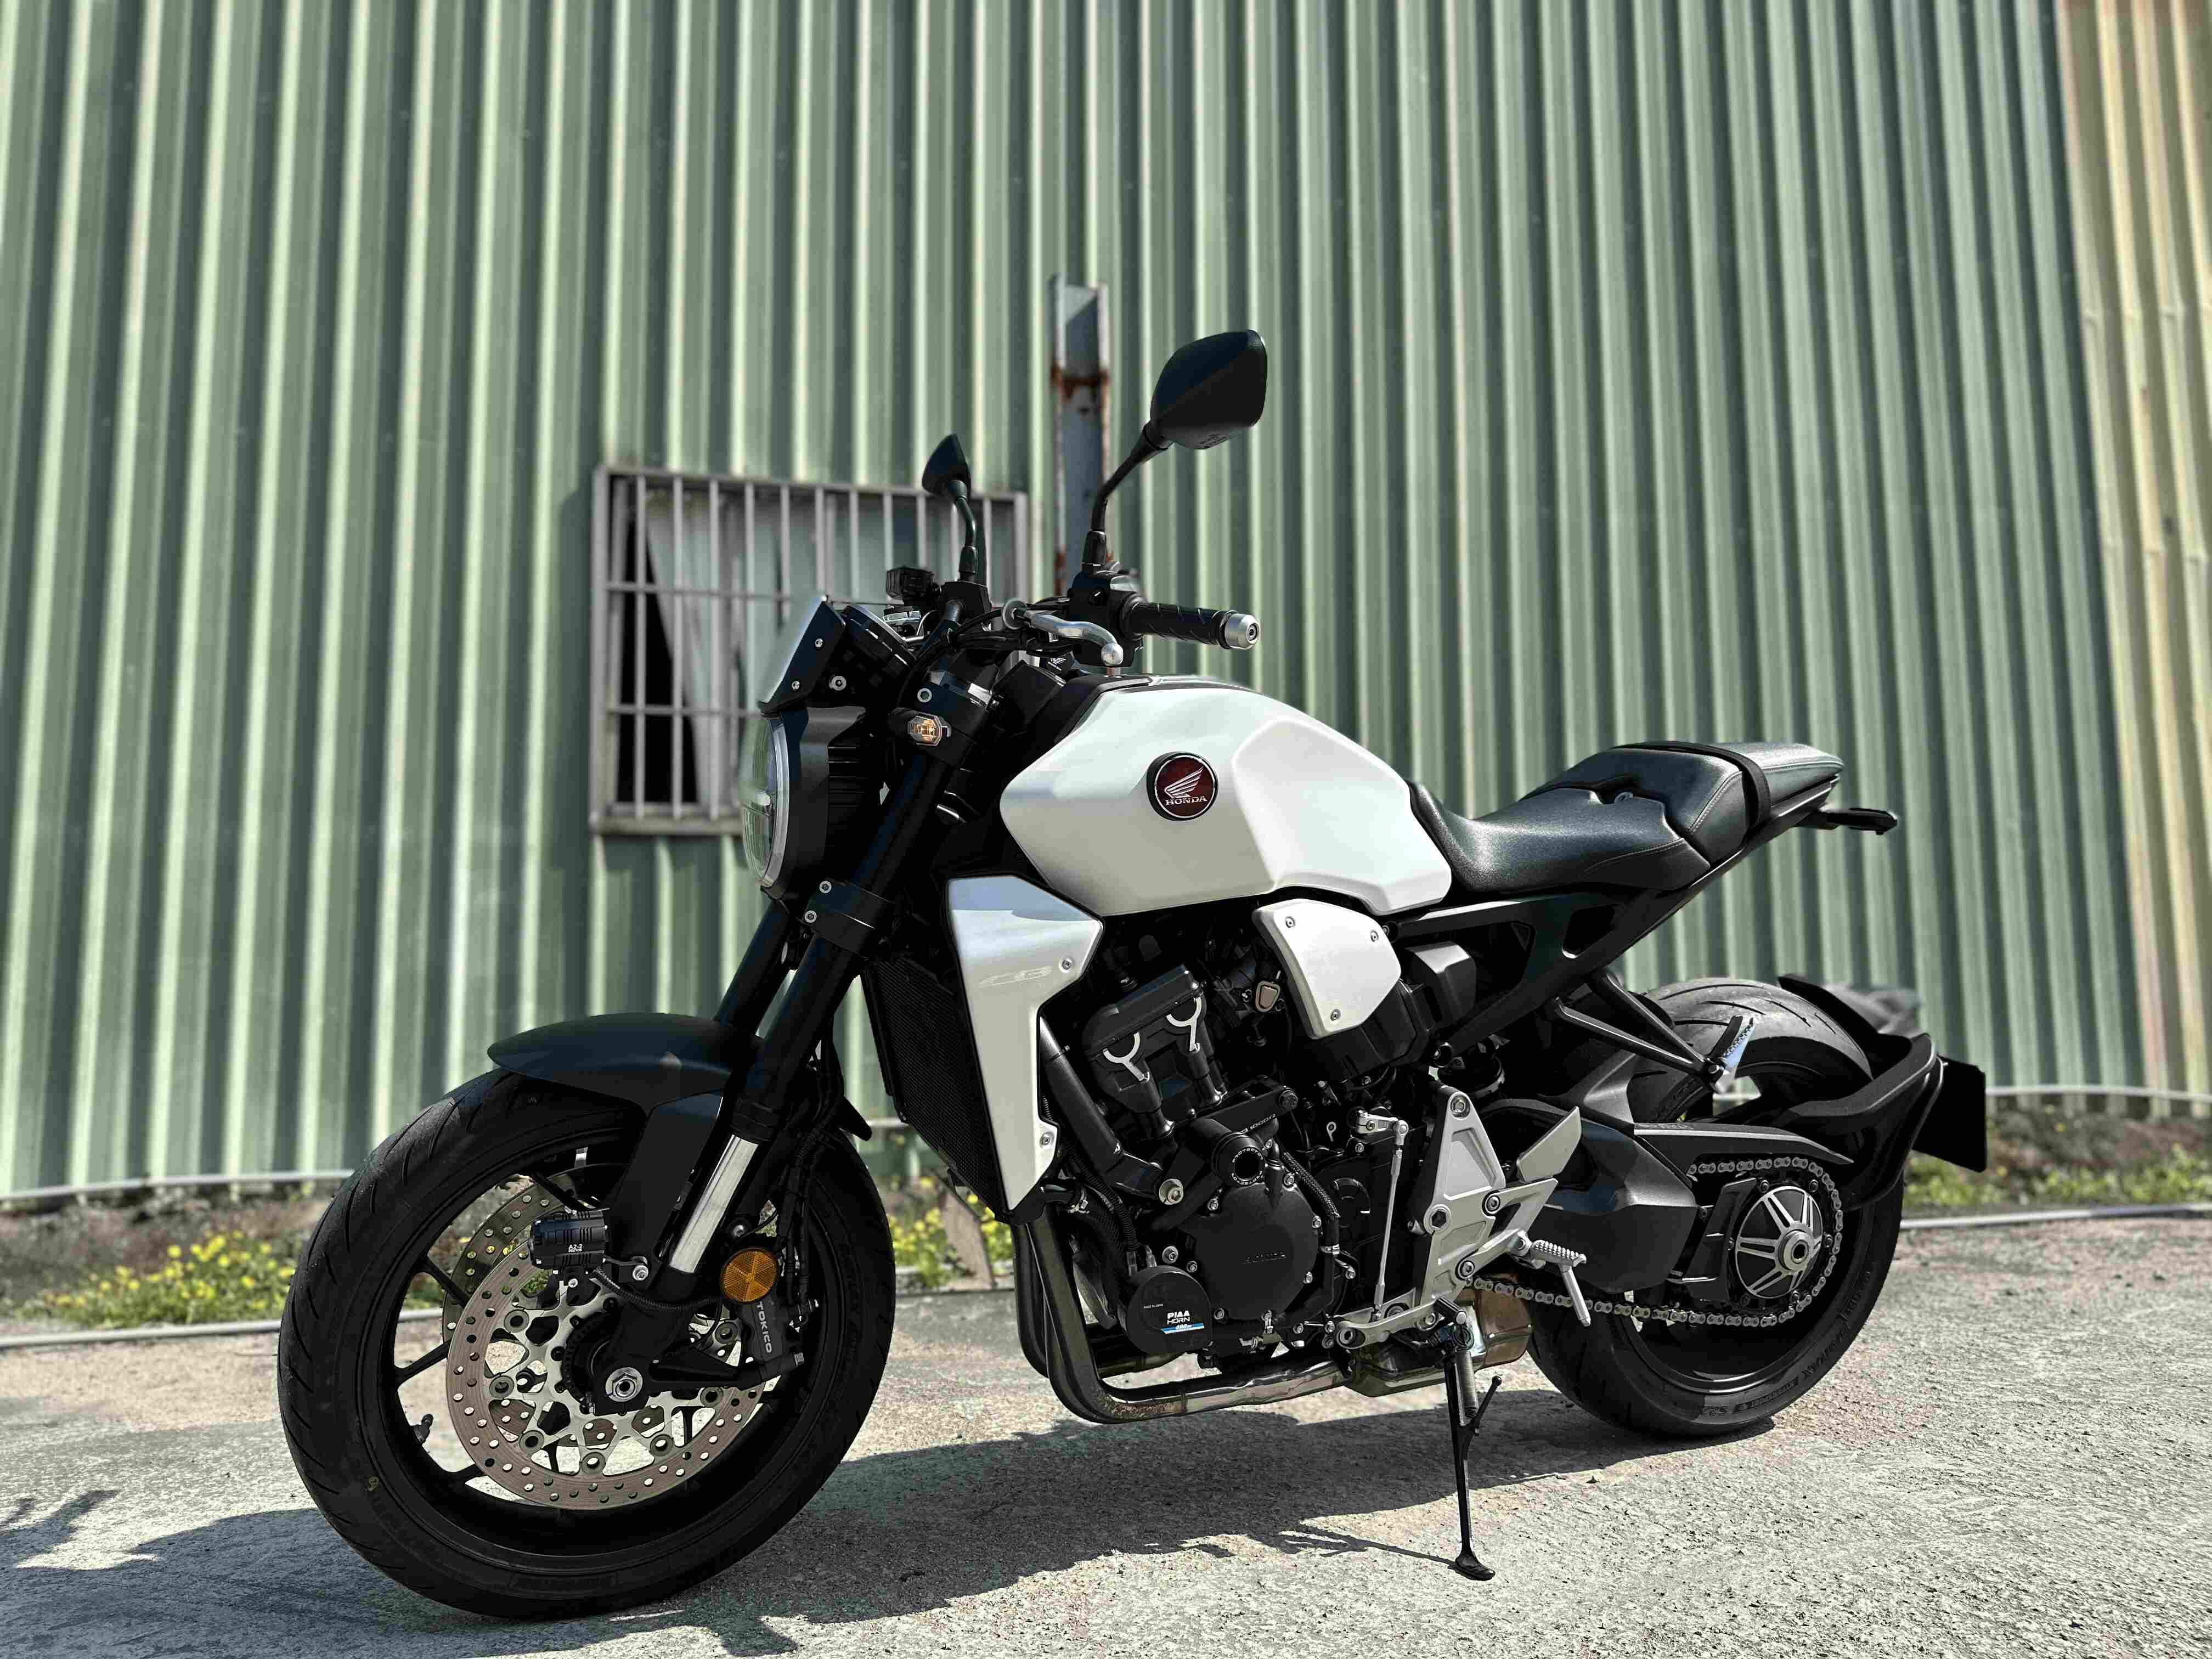 【湯姆重機】HONDA CB1000R (2018-) - 「Webike-摩托車市」 湯姆重機 2020 Honda CB1000R 公司車